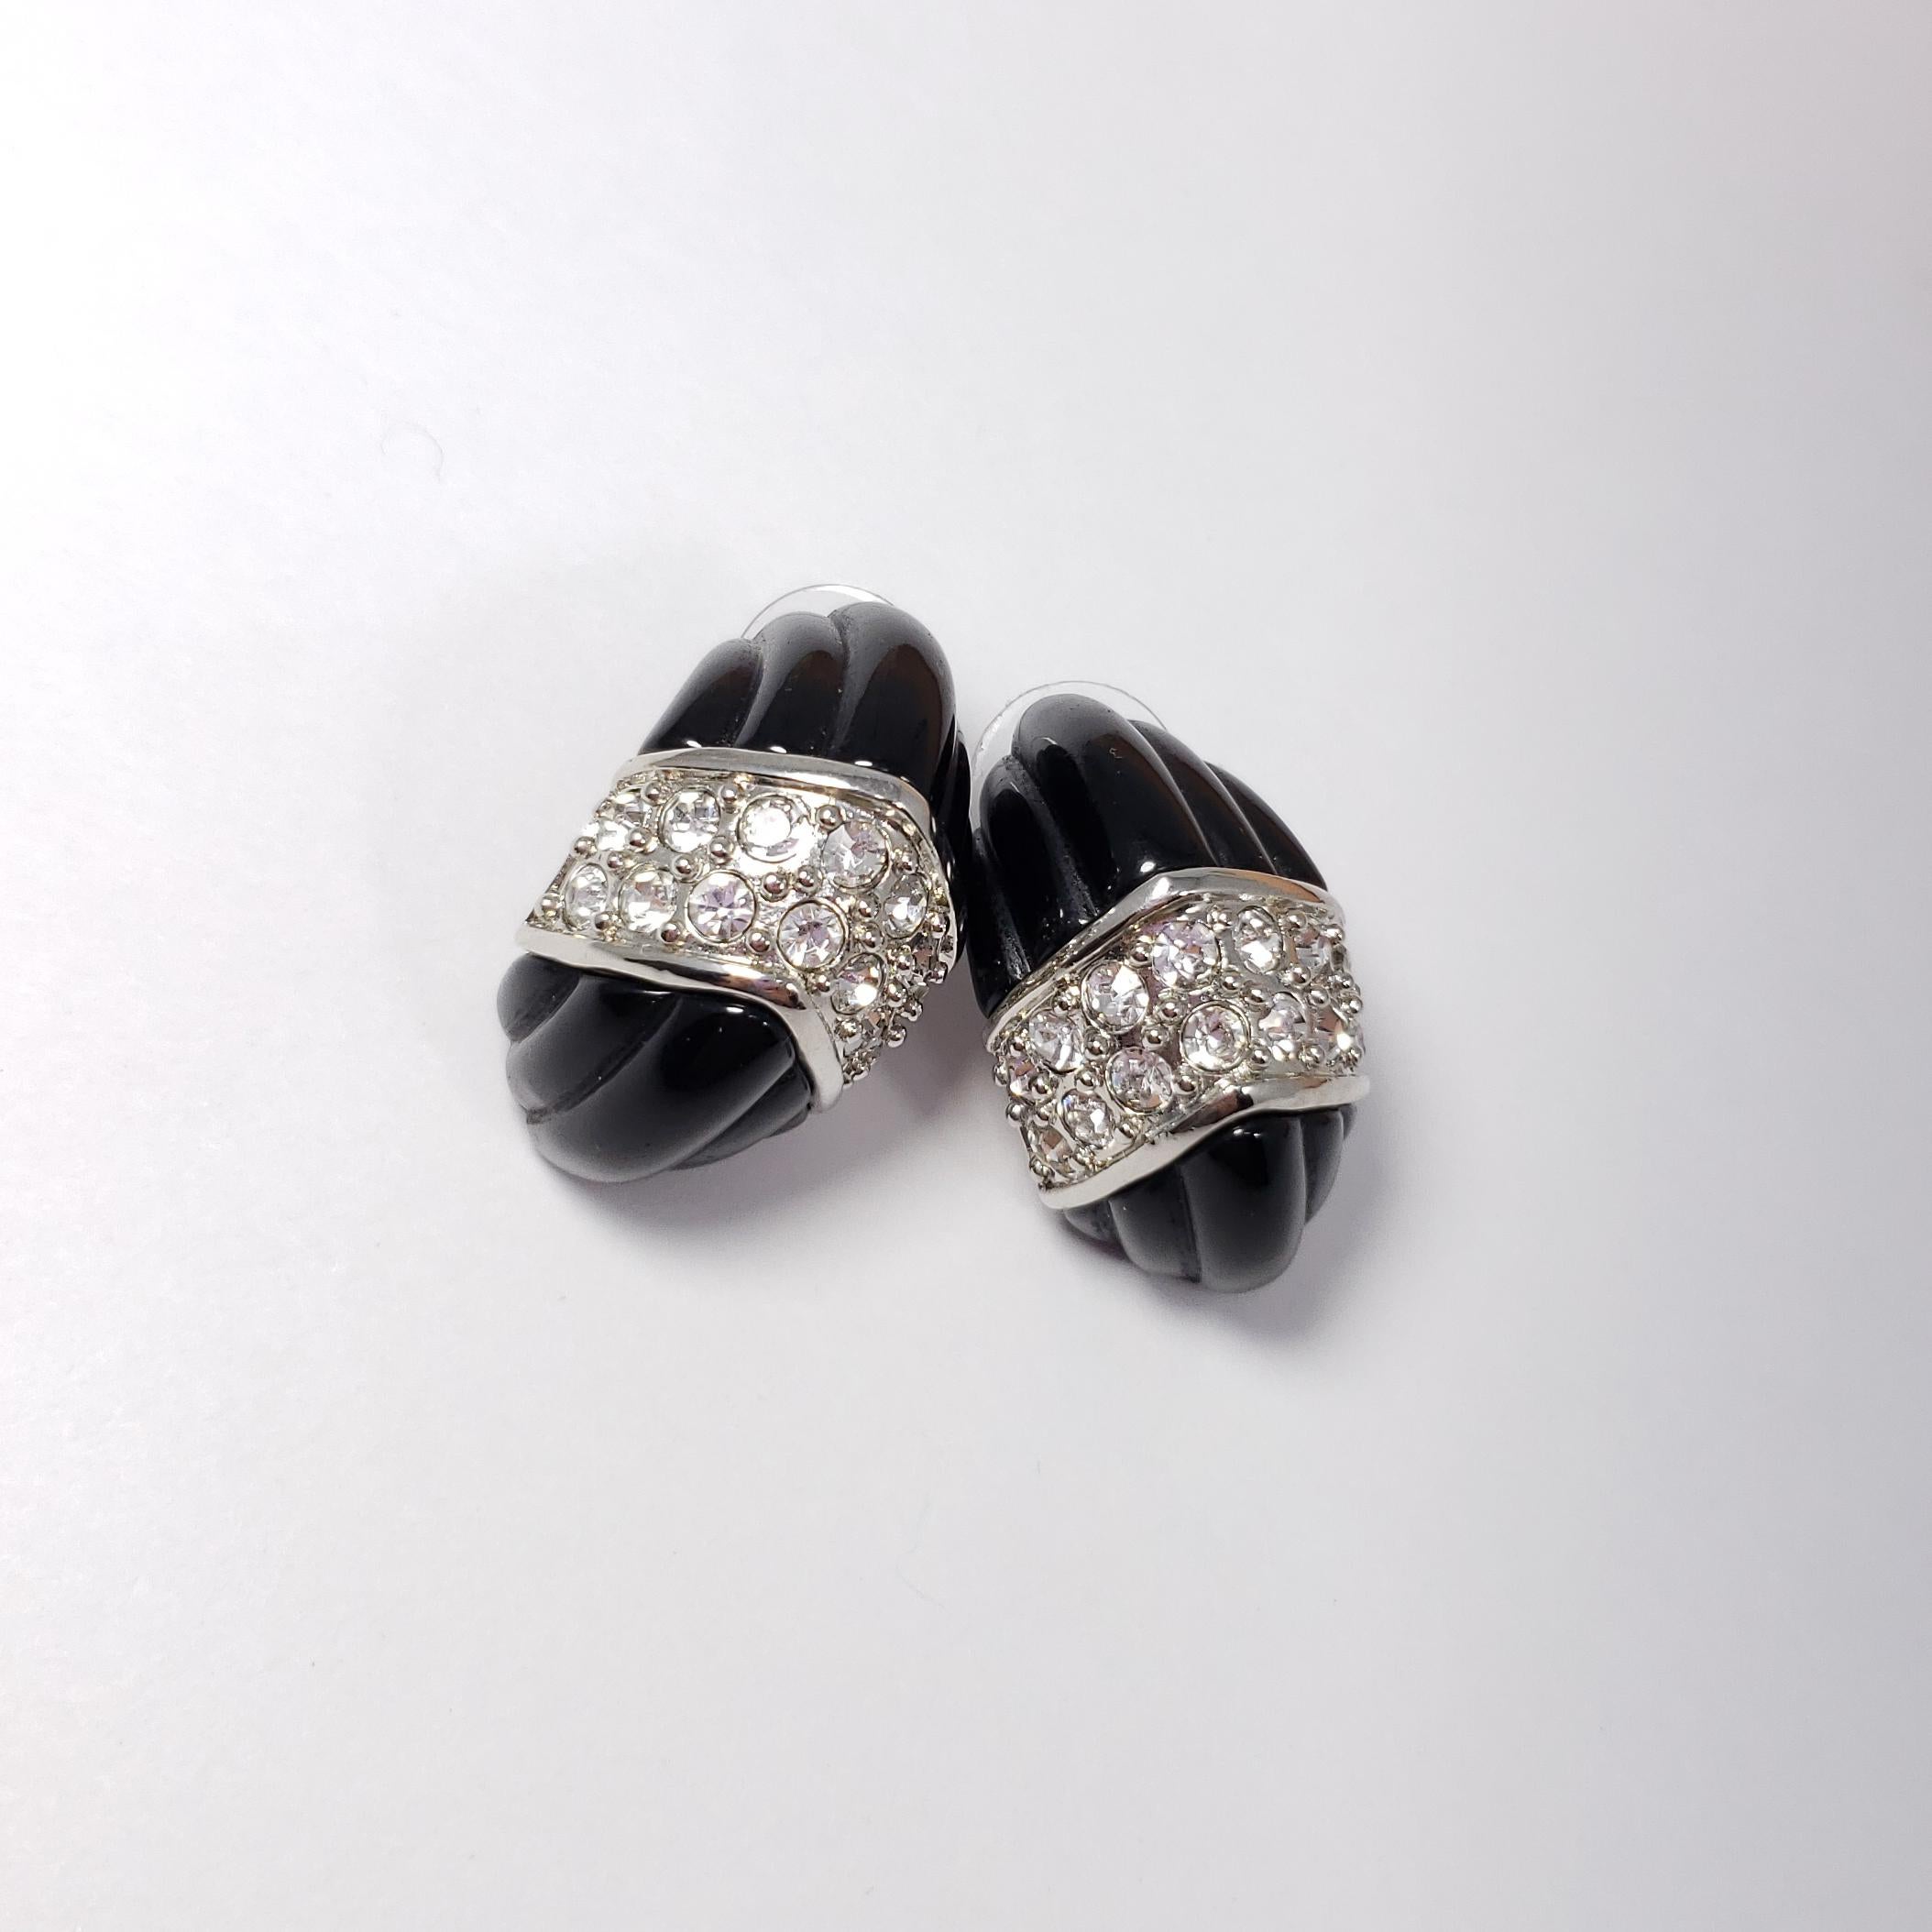 Une paire de boucles d'oreilles de Kenneth Jay Lane. Chaque boucle d'oreille noire sculptée est décorée de cristaux clairs pavés dans une monture en argent.

Poinçons : KJL, Chine